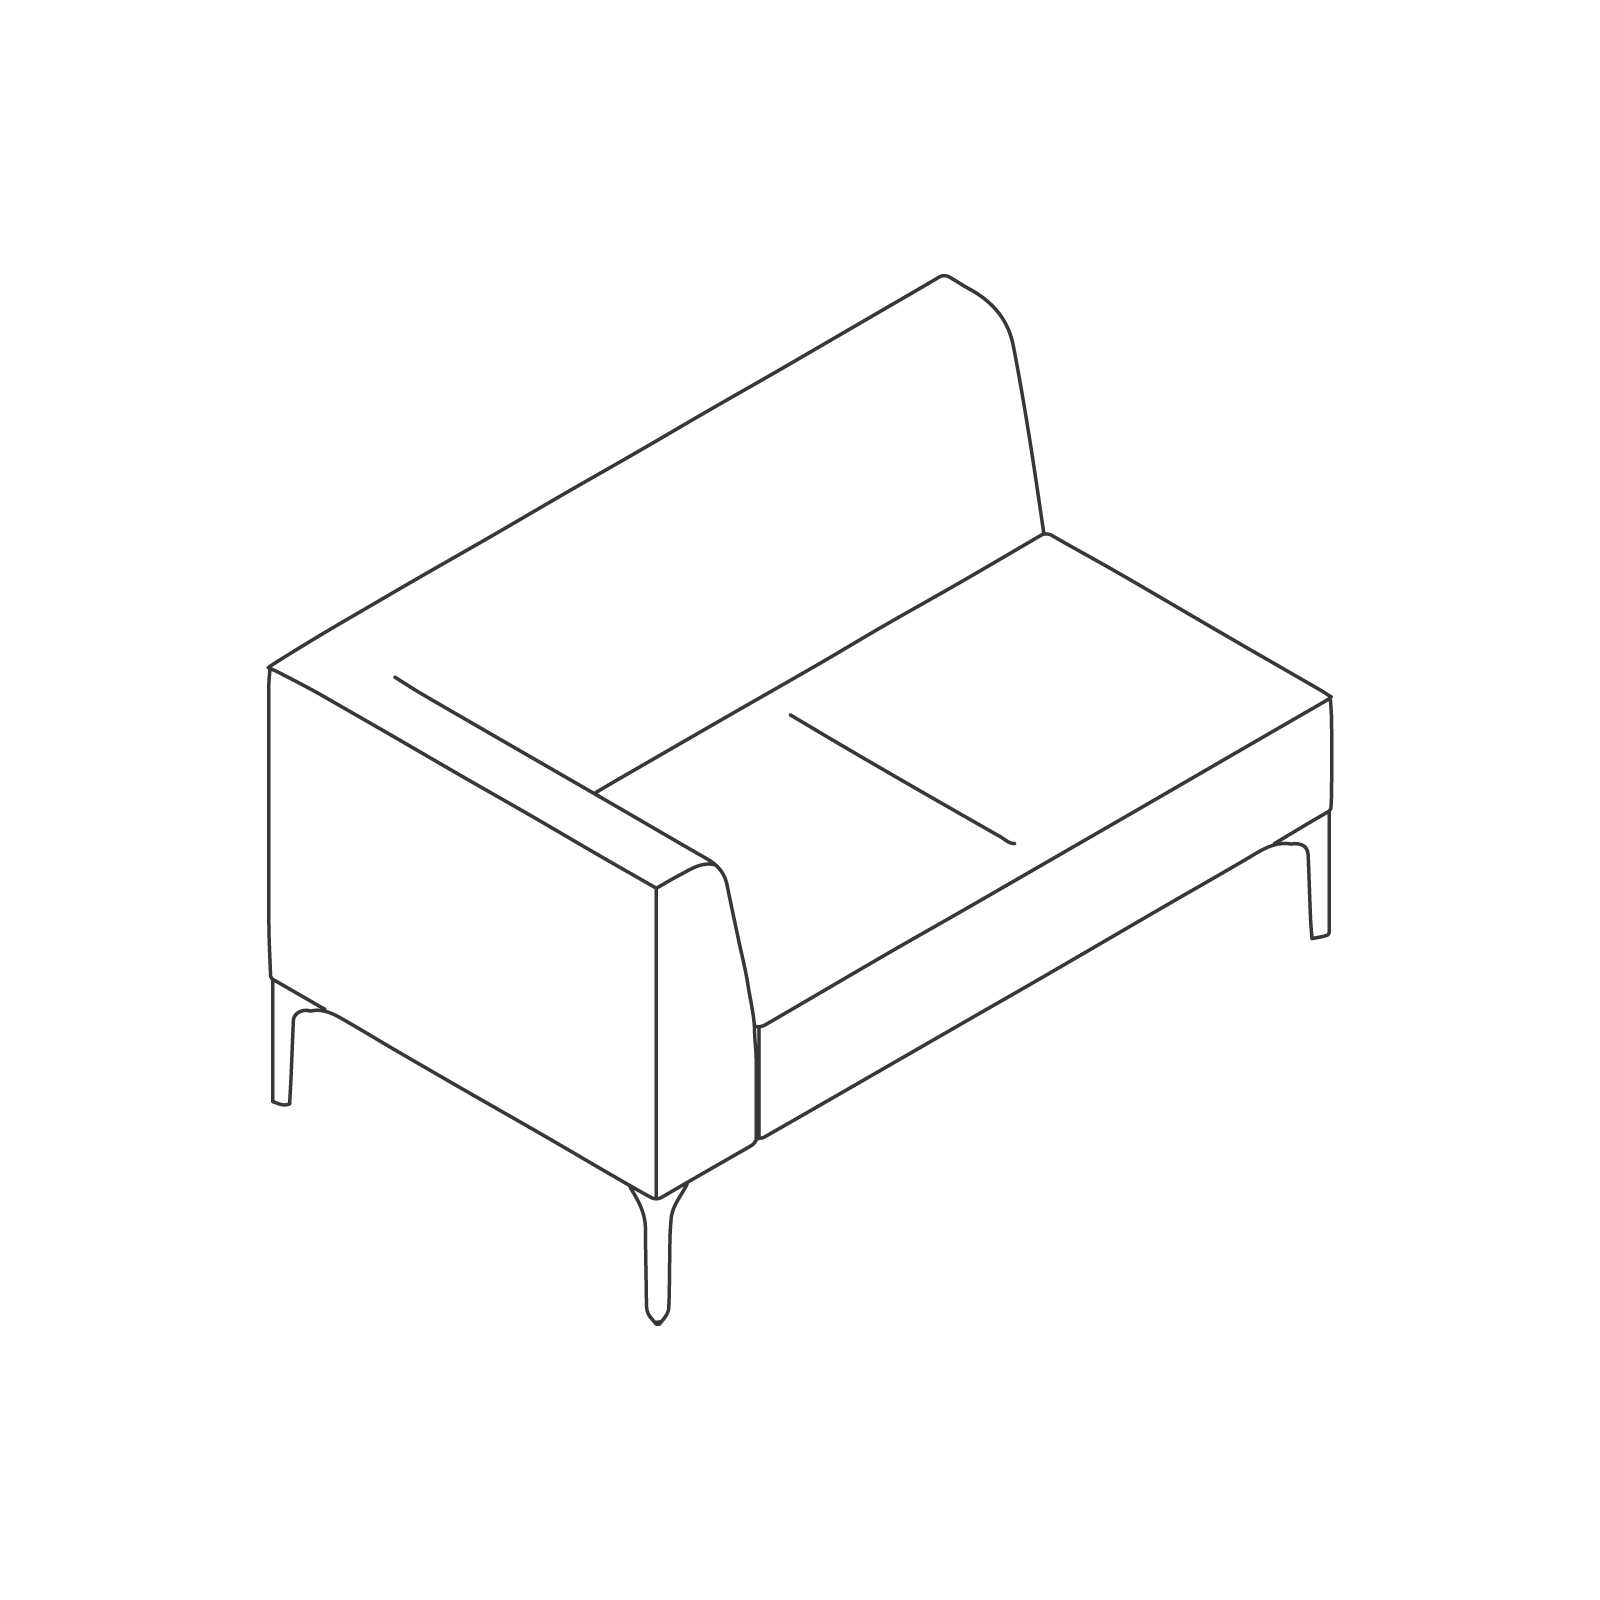 线描图 - Symbol模块化座椅 - 右侧扶手 - 双座